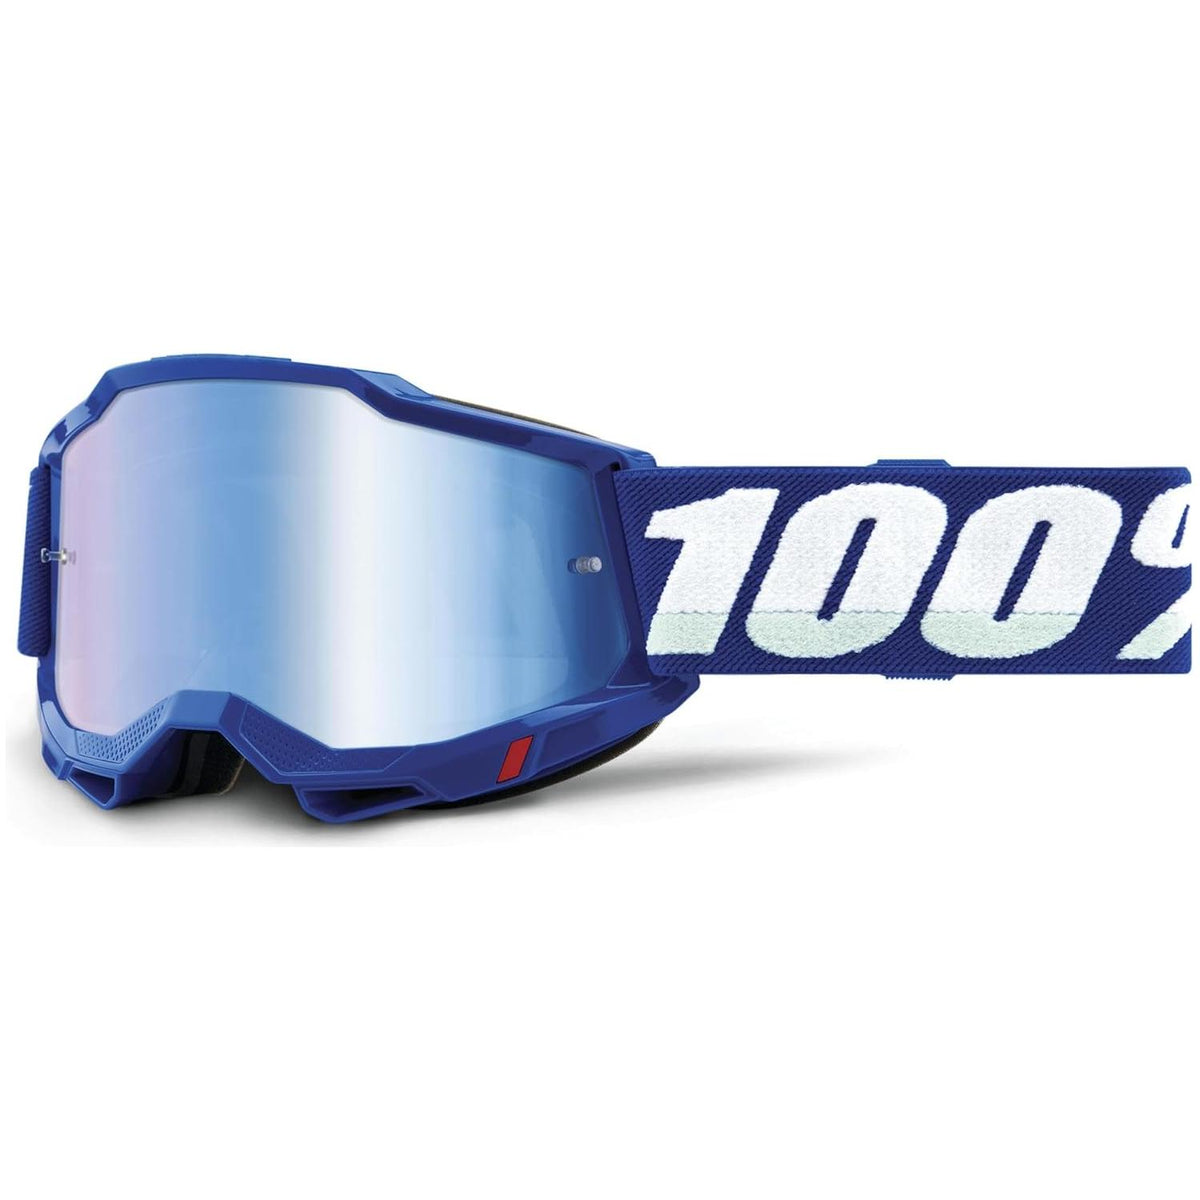 100% Accuri 2 Moto/MTB Goggle - Blue; Blue Mirror